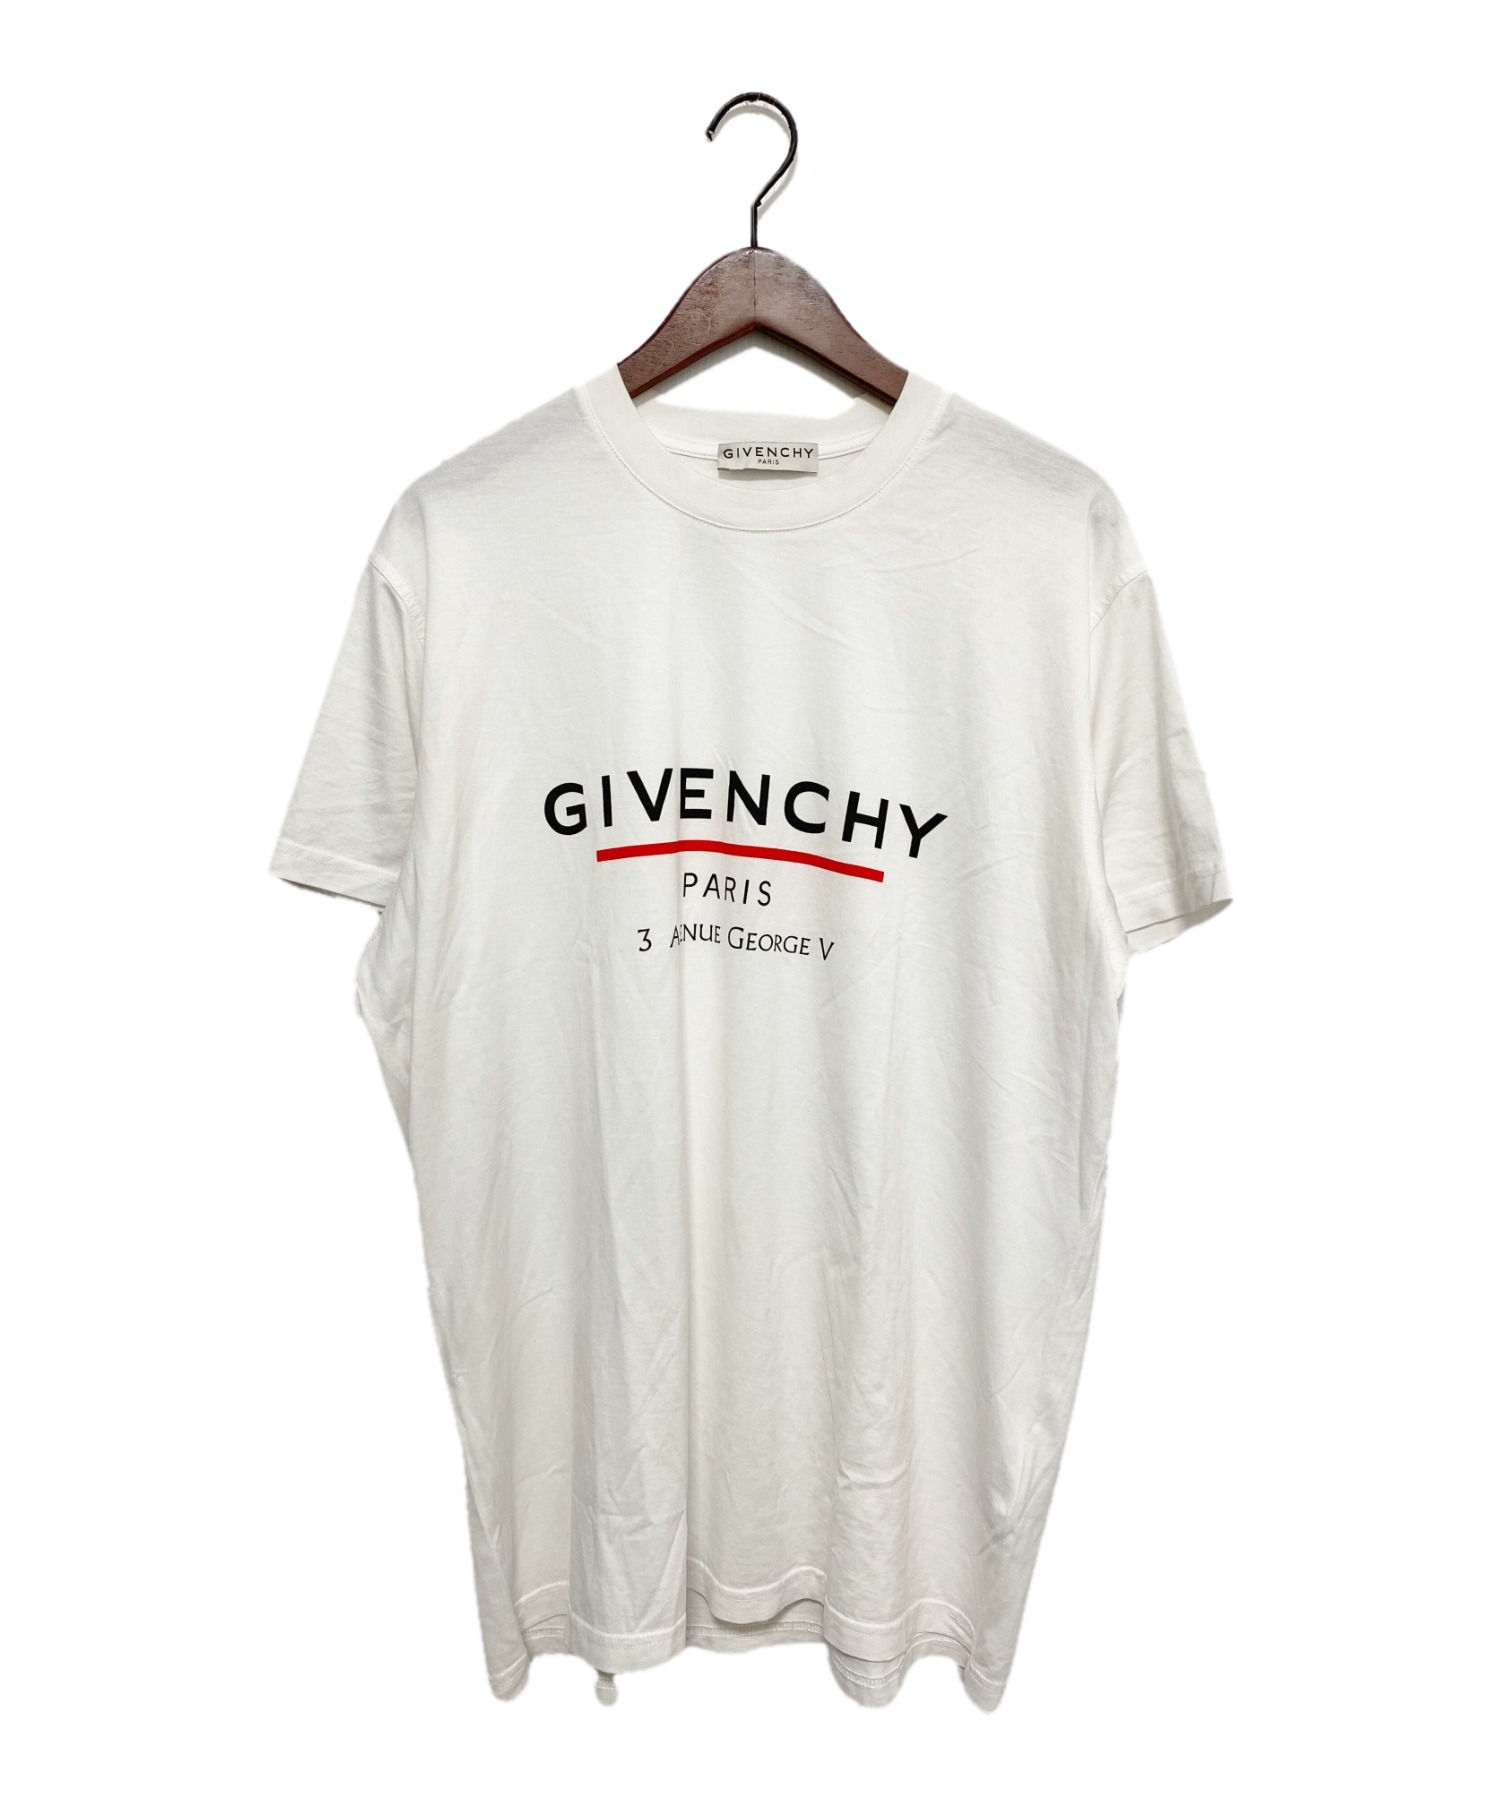 GIVENCHY (ジバンシィ) ロゴTシャツ サイズ:XS